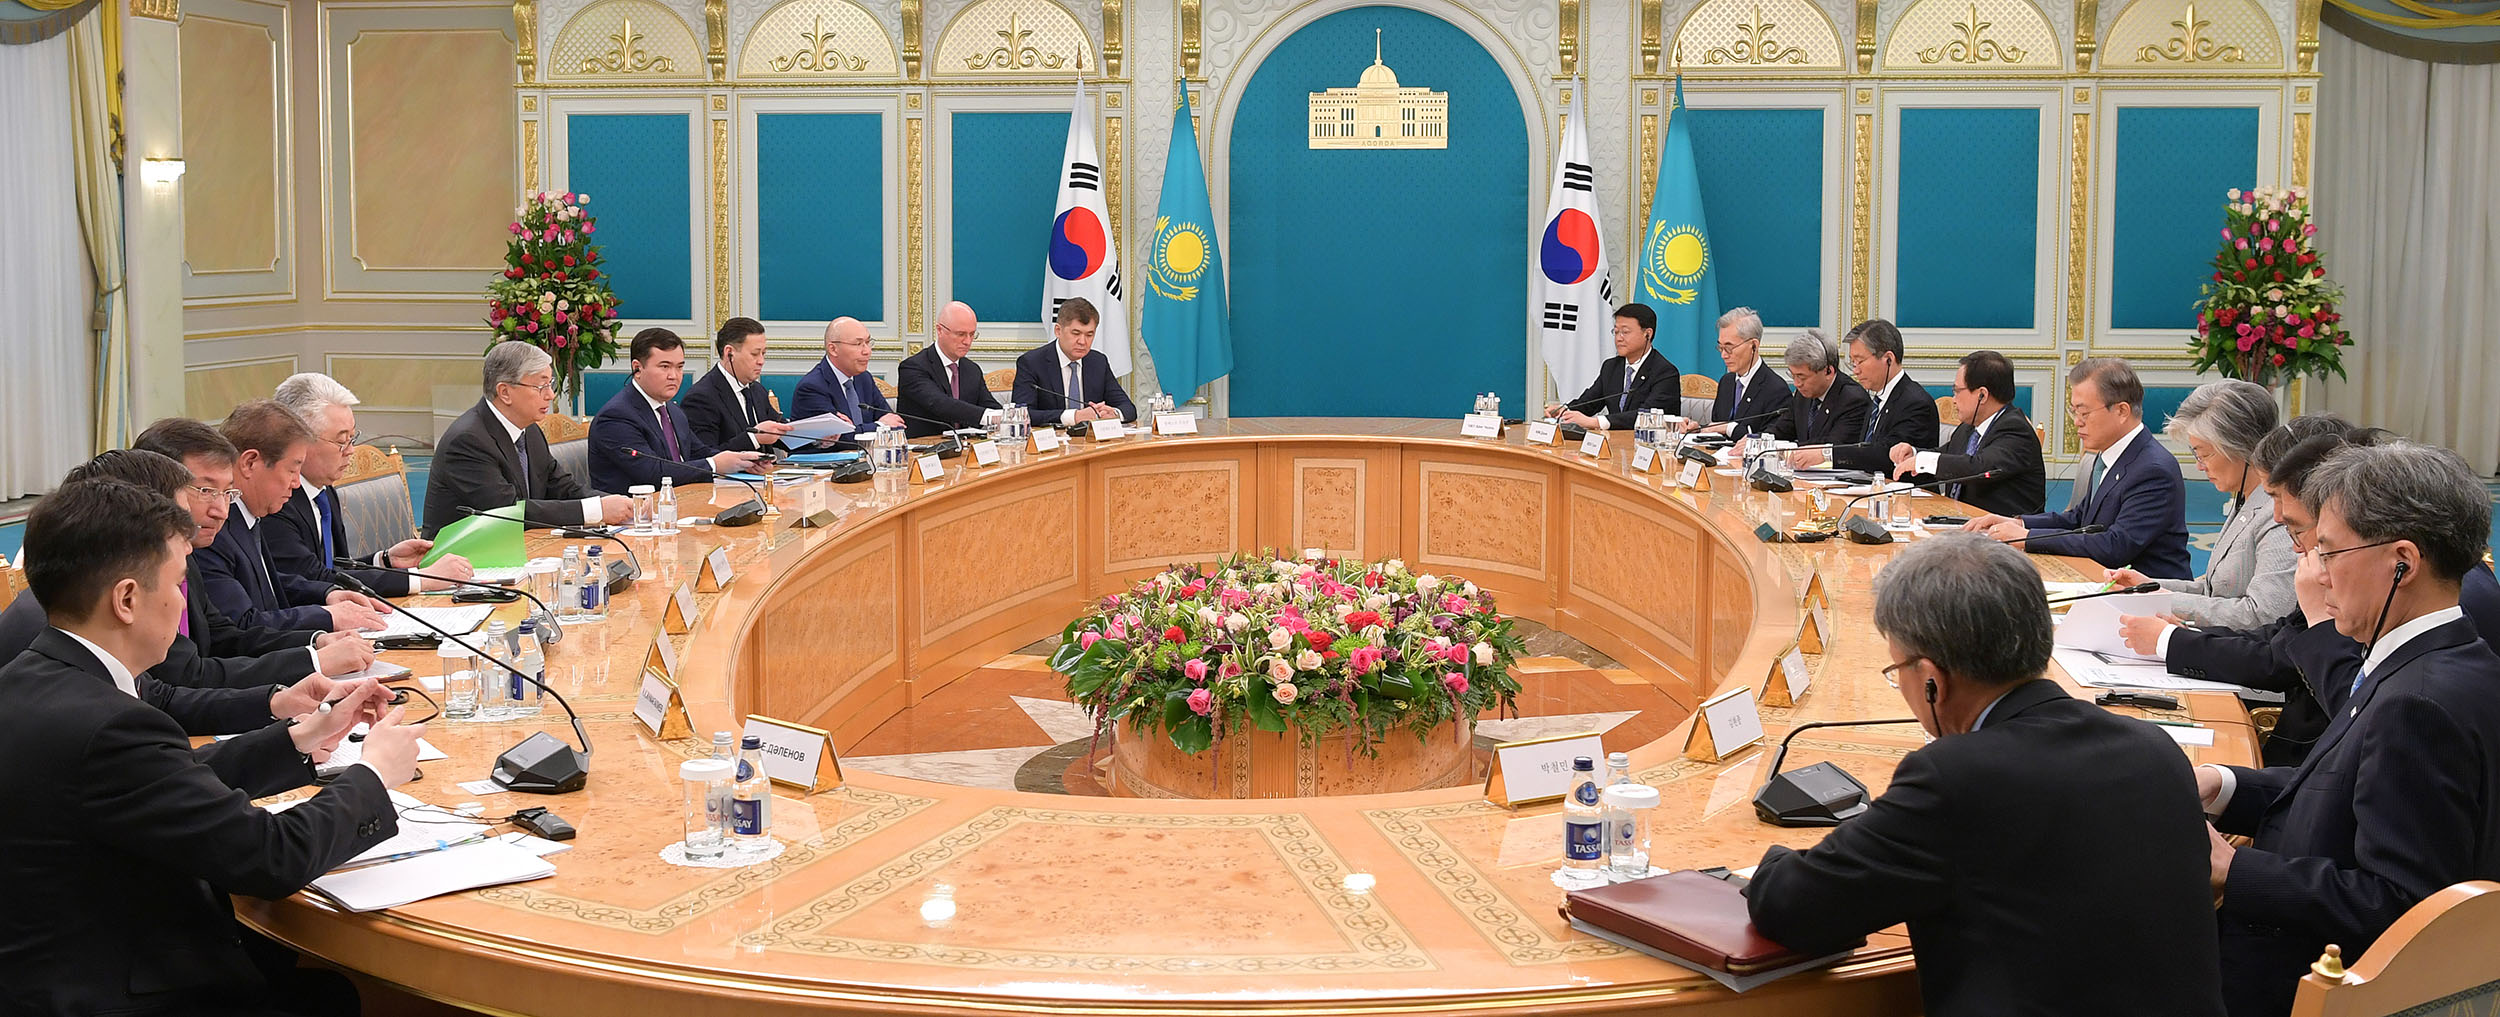 К. Токаев провел переговоры с Президентом Республики Корея Мун Чжэ Ином в расширенном составе